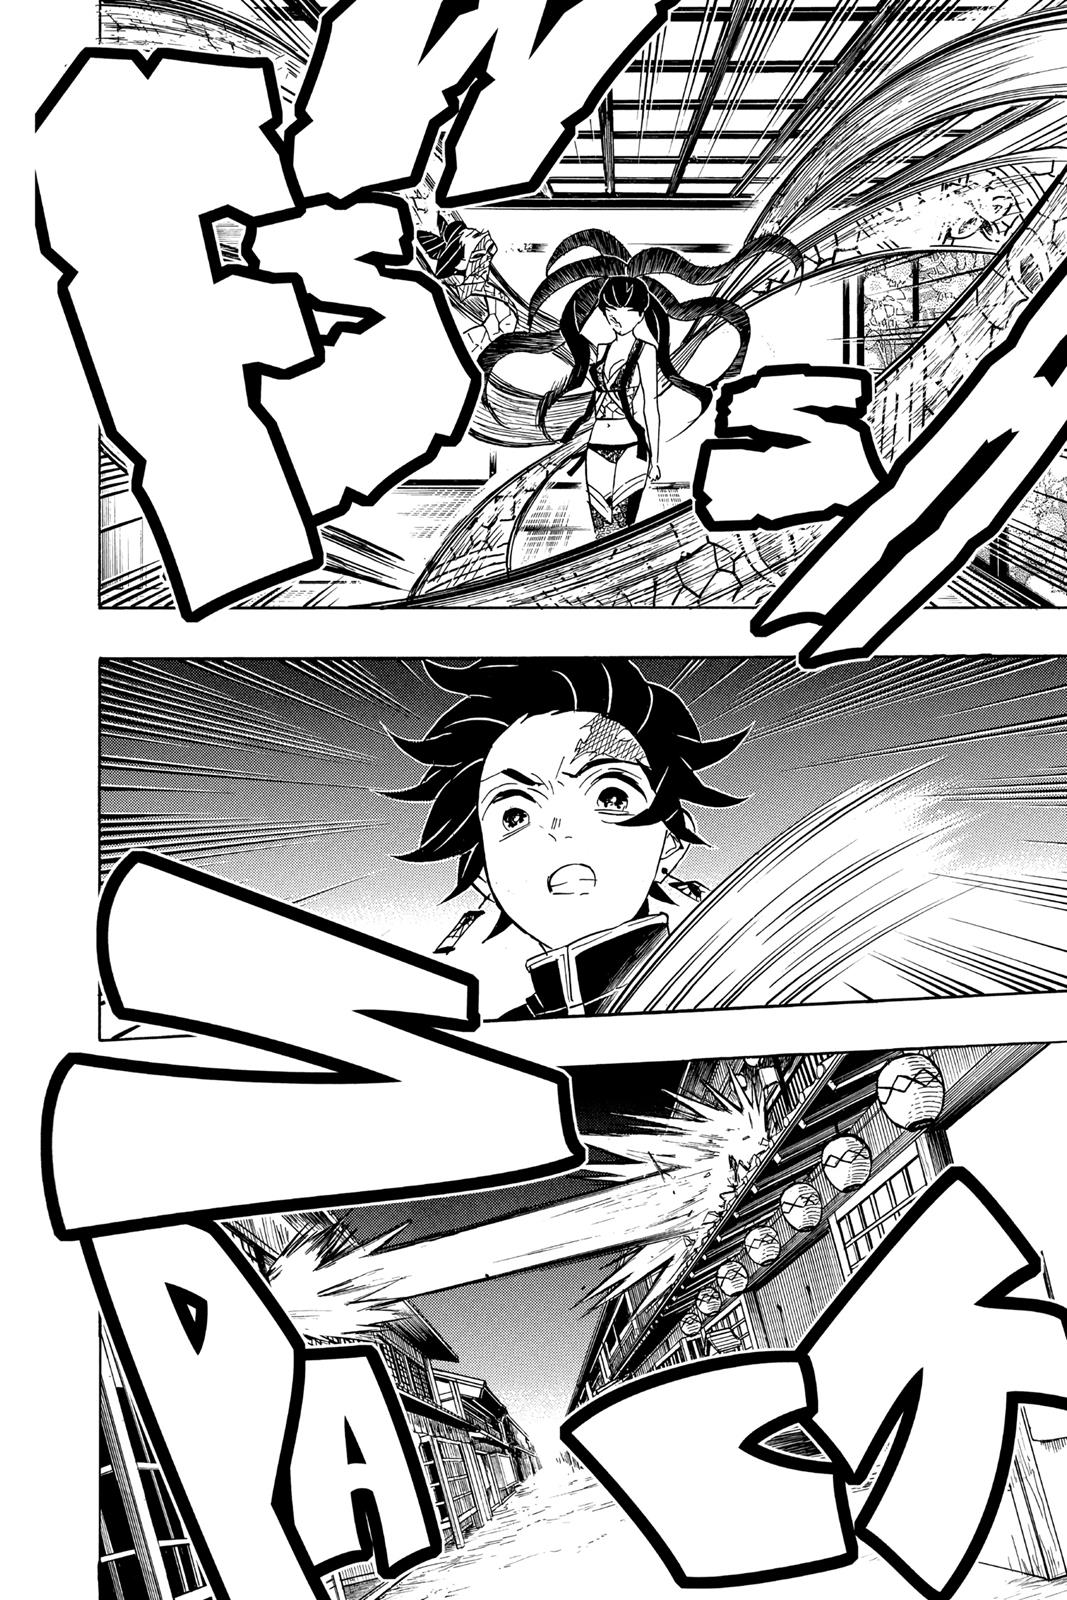 Demon Slayer Manga Manga Chapter - 76 - image 8